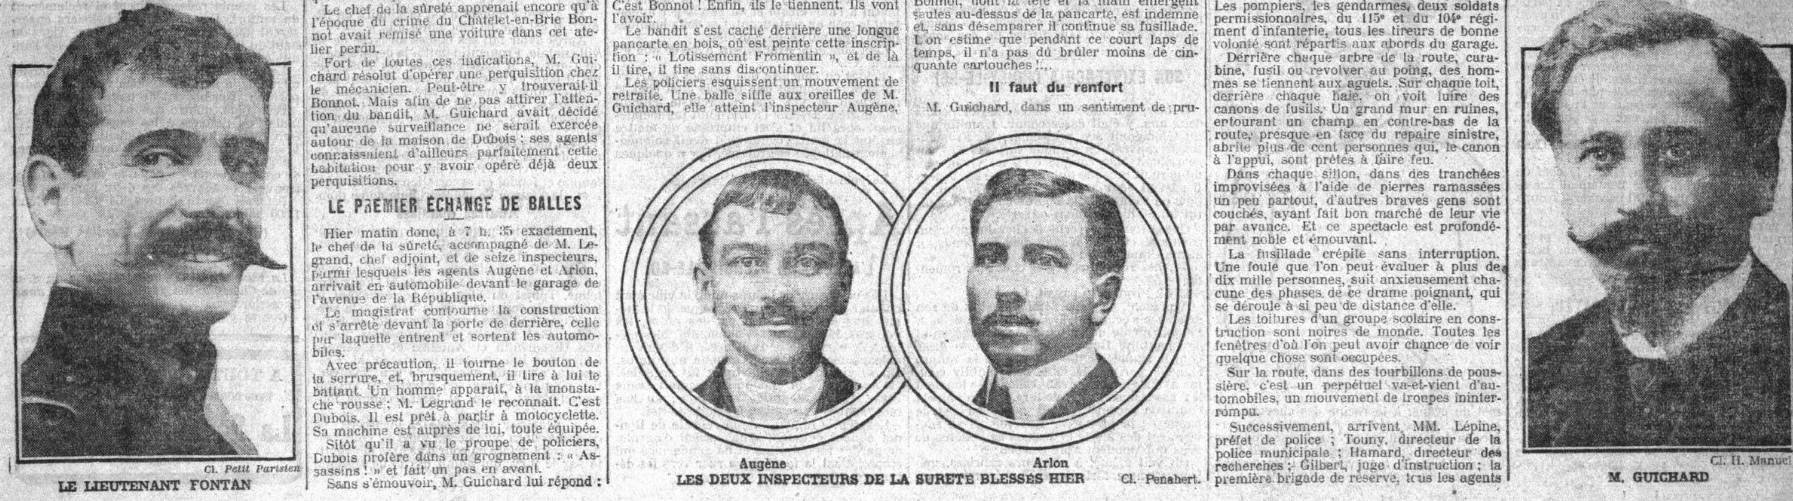 De gauche à droite : le Lieutenant Fontan, les inspecteurs de la sûreté Augène et Arlon, blessés pendant l'assaut, et M. Guichard. Le Petit Parisien, 29 avril 1912 - source : RetroNews-BnF